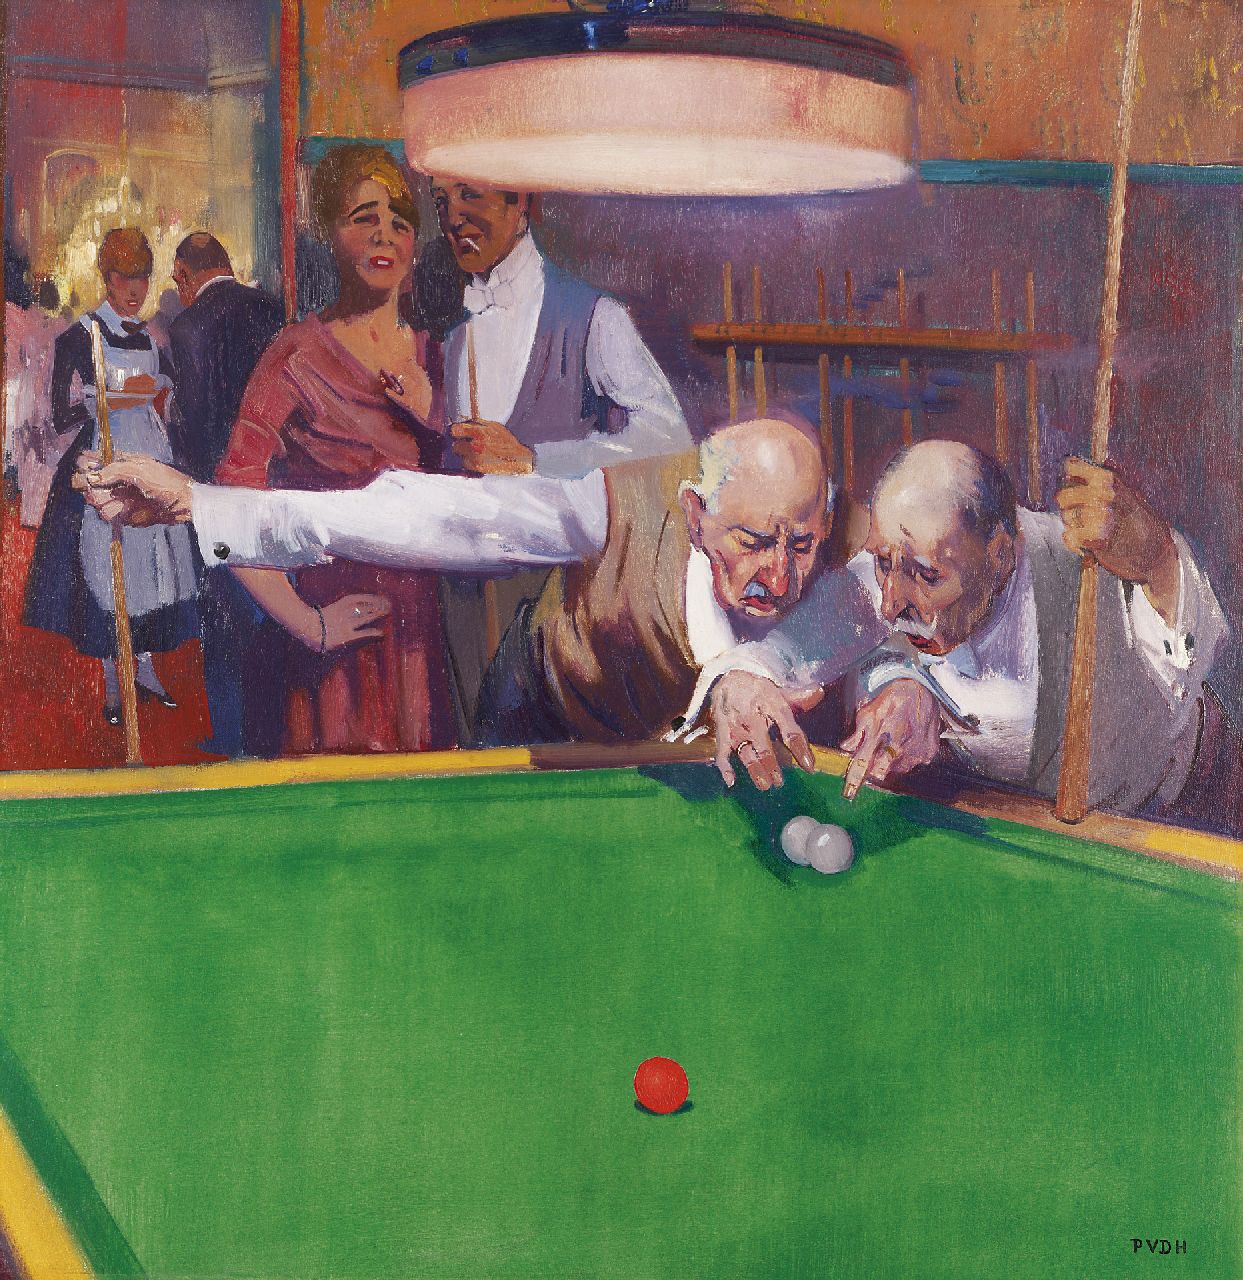 Hem P. van der | Pieter 'Piet' van der Hem, Discussing a game of billiards, Öl auf Leinwand 79,8 x 76,7 cm, signed l.r. and with initials und painted ca. 1919